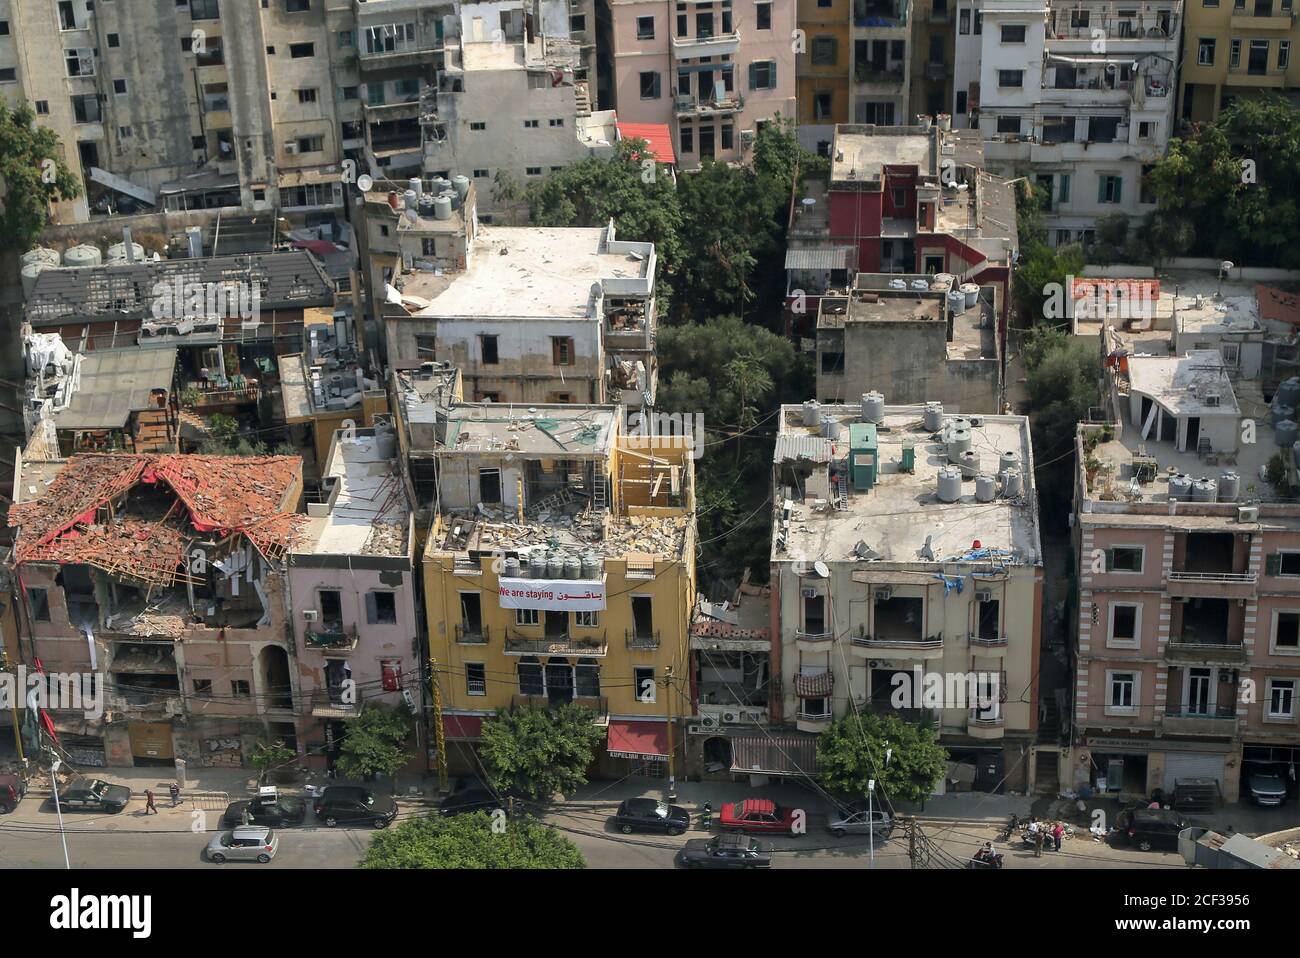 Beirut, Libanon. September 2020. Blick auf zerstörte Häuser und Gebäude in der Nähe des Hafens von Beirut, dem Ort der massiven Explosion, die Beirut am 04. August 2020 erschütterte. Quelle: Marwan Naamani/dpa/Alamy Live News Stockfoto